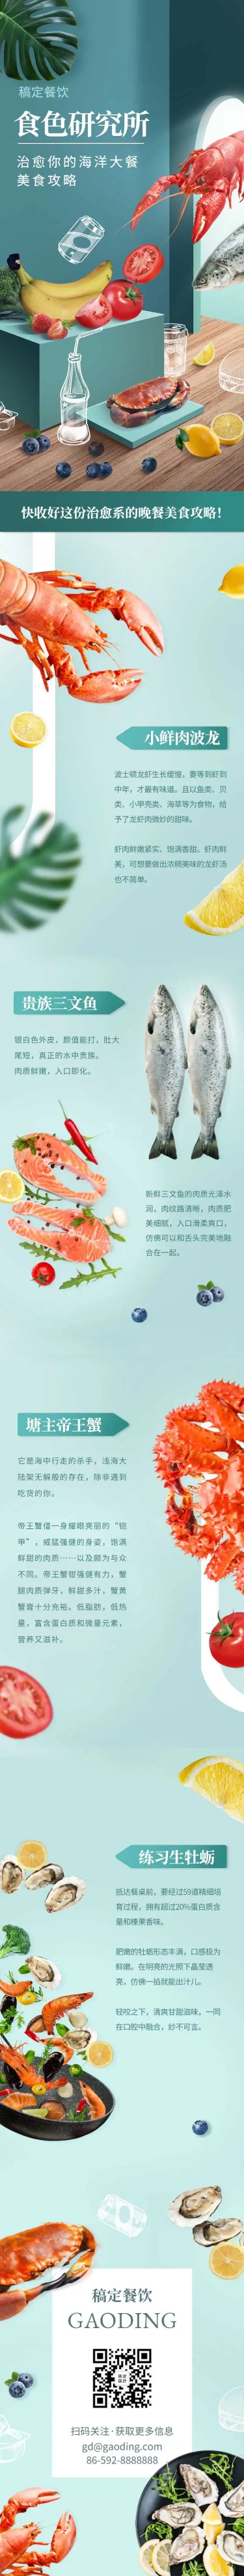 H5长页食品生鲜海鲜物种介绍菜单推荐